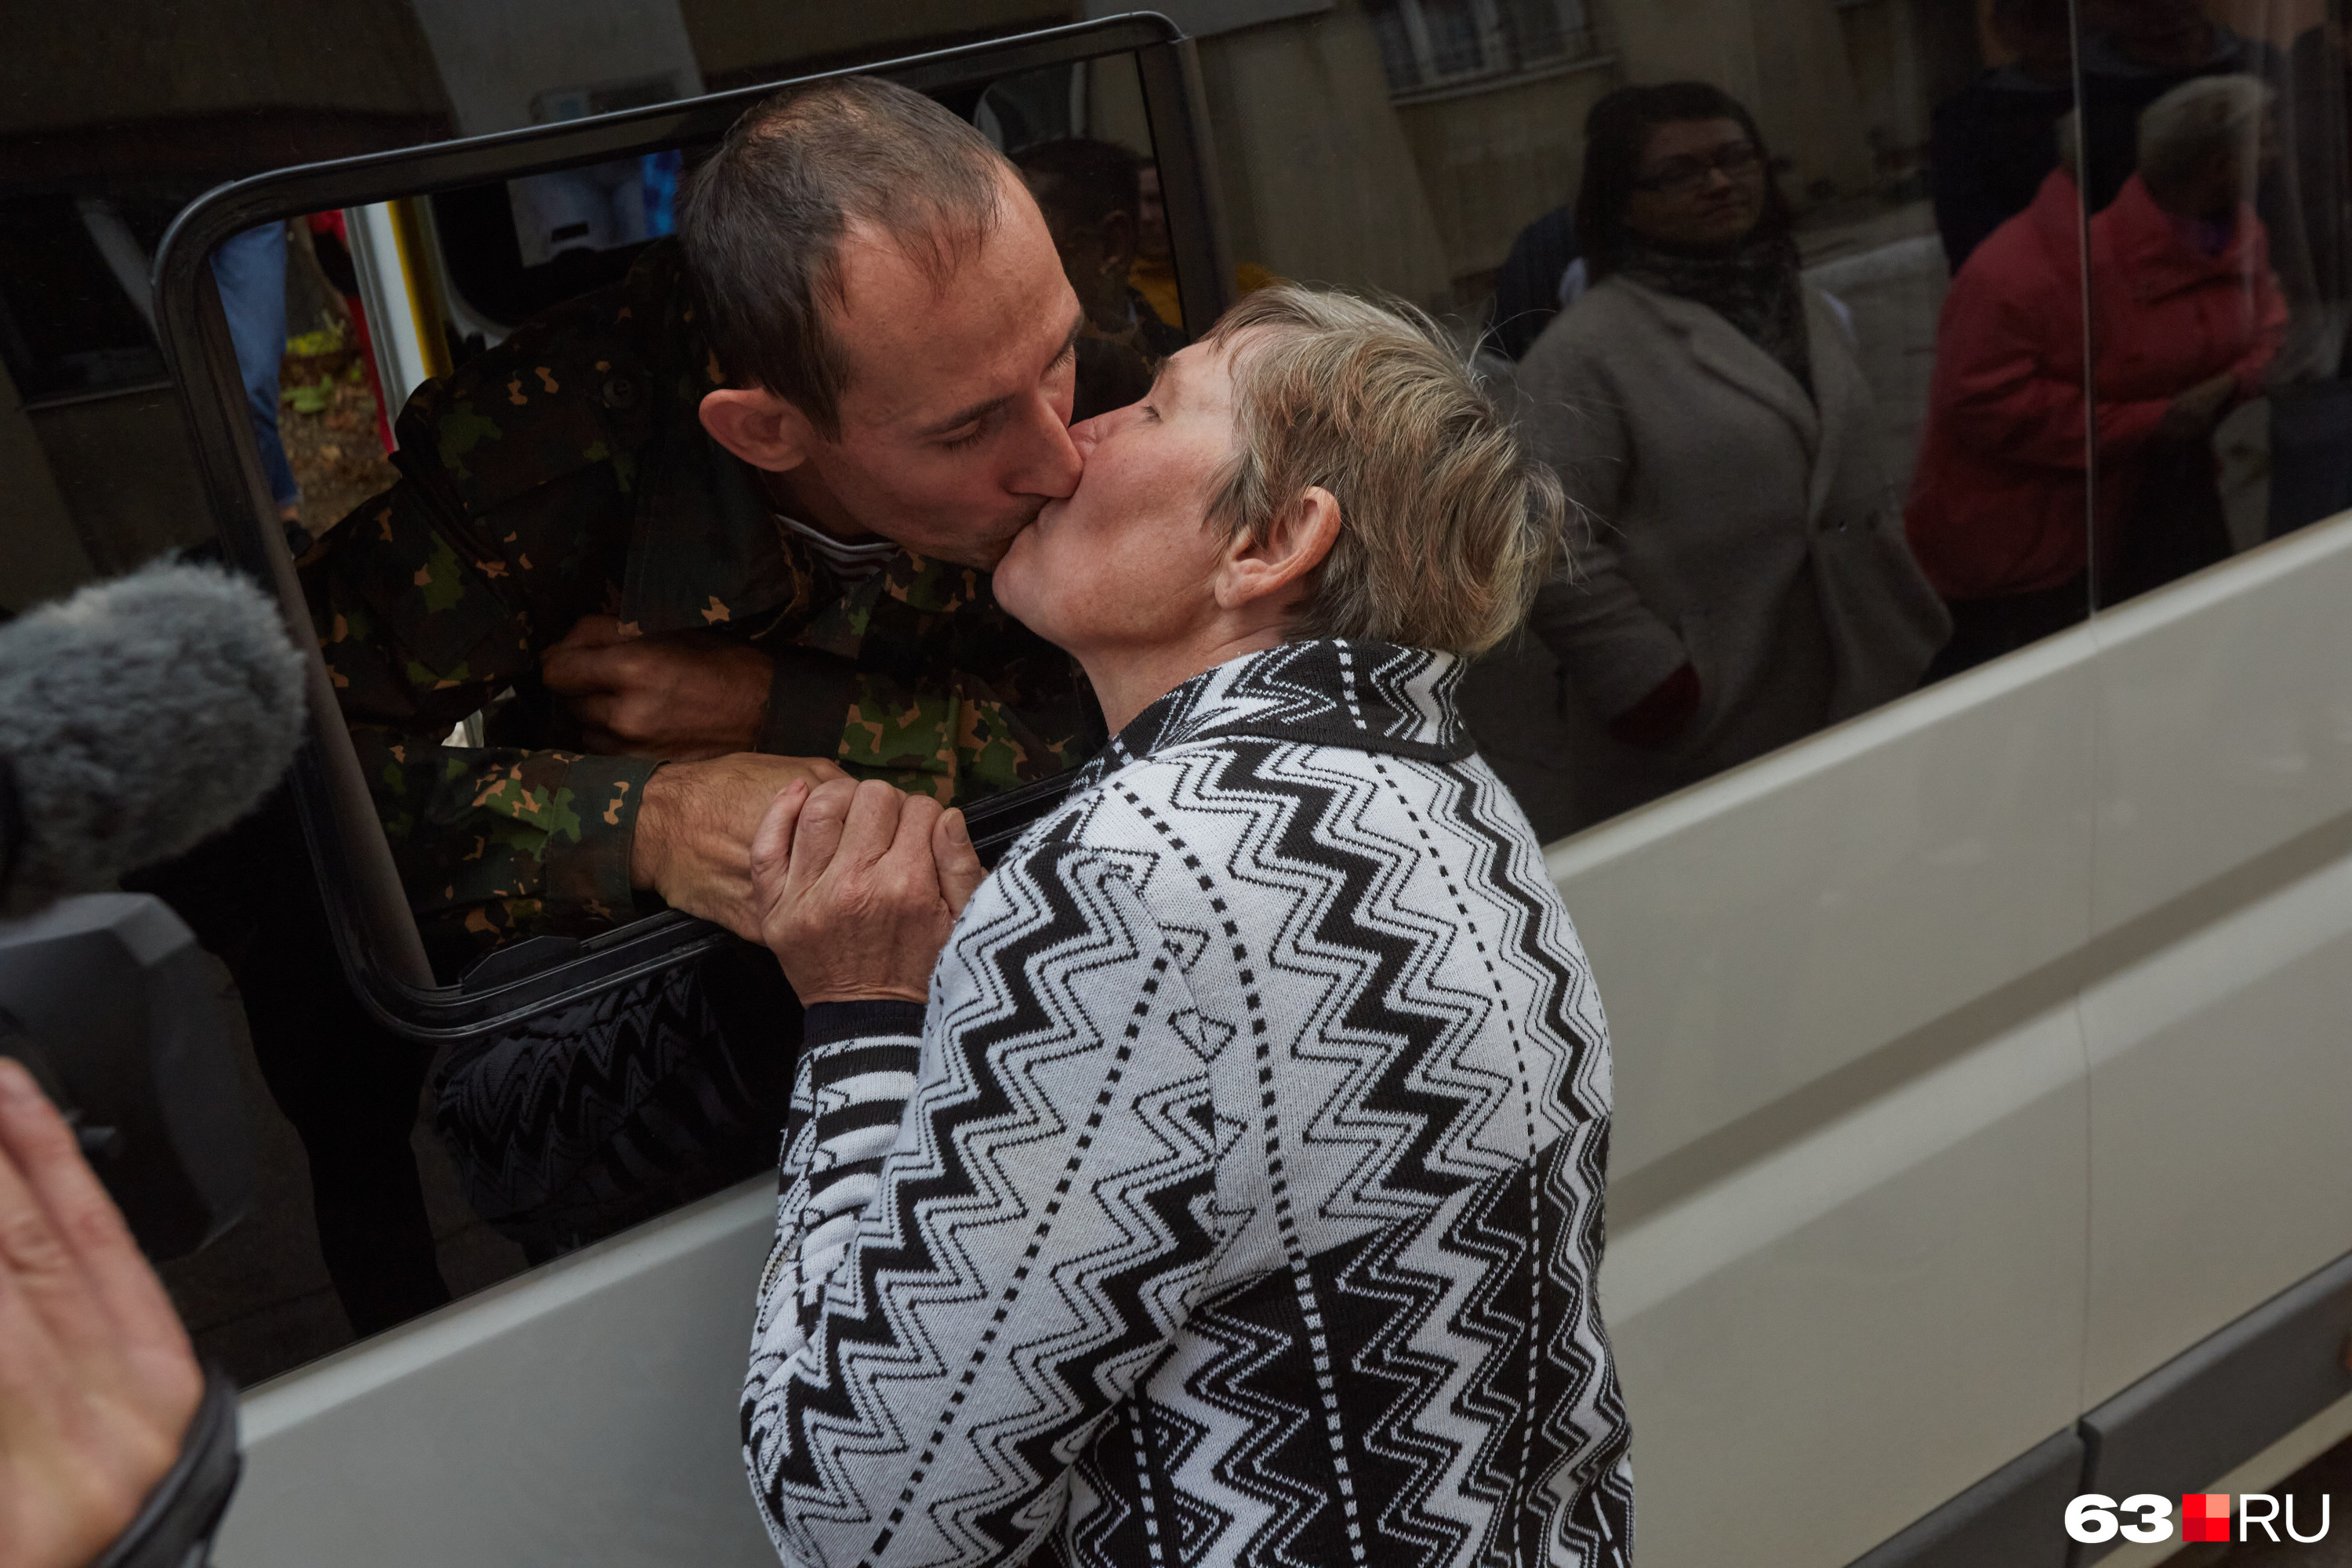 Многим было очень трудно расстаться со своими любимыми — поцелуи, объятия и прощания не прекращались даже после того, как мужчины заходили в автобусы и маршрутки